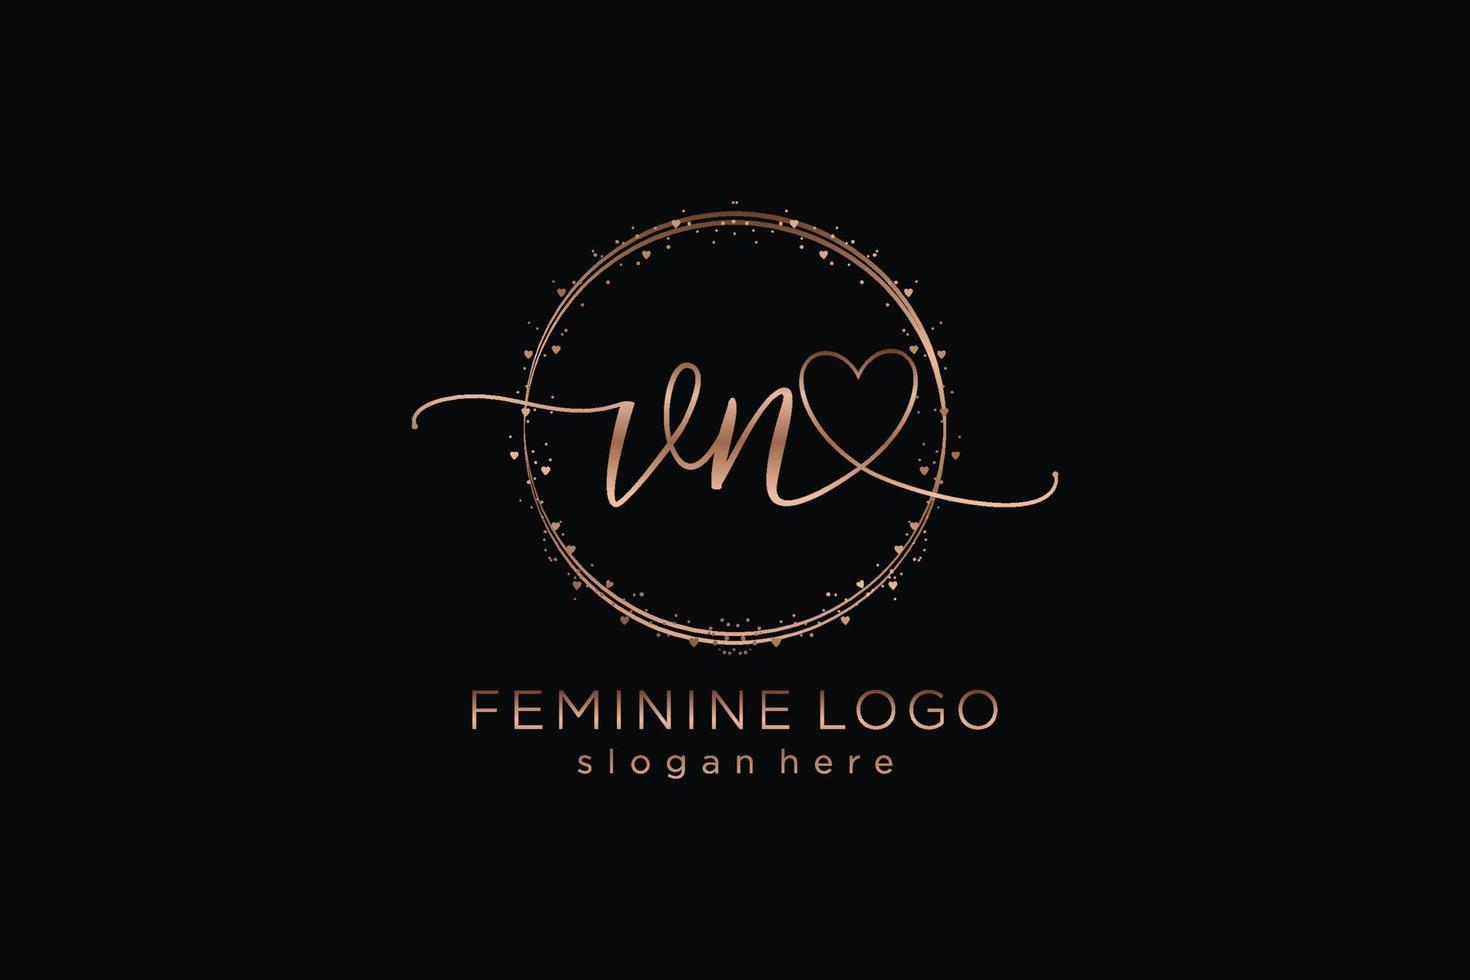 logo initial d'écriture manuscrite vn avec logo vectoriel de modèle de cercle du mariage initial, mode, floral et botanique avec modèle créatif.